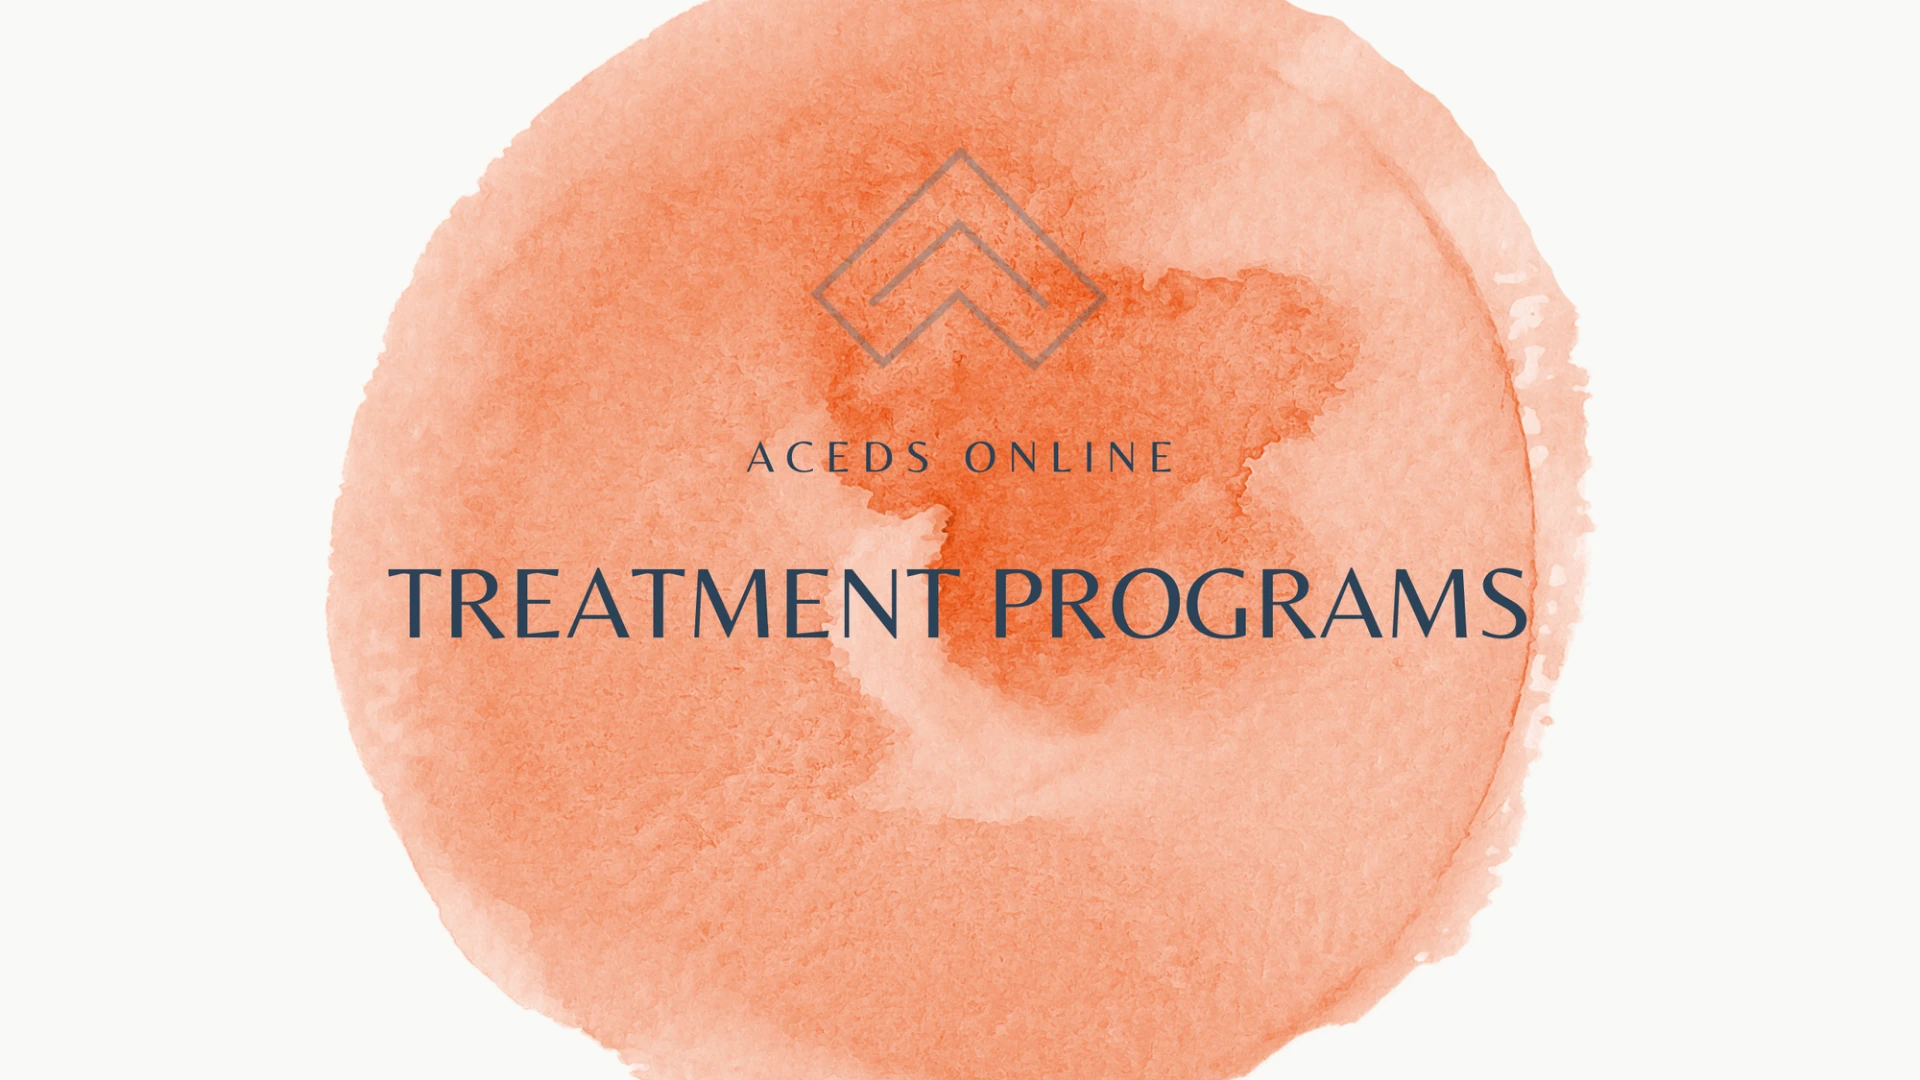 Treatment Programs